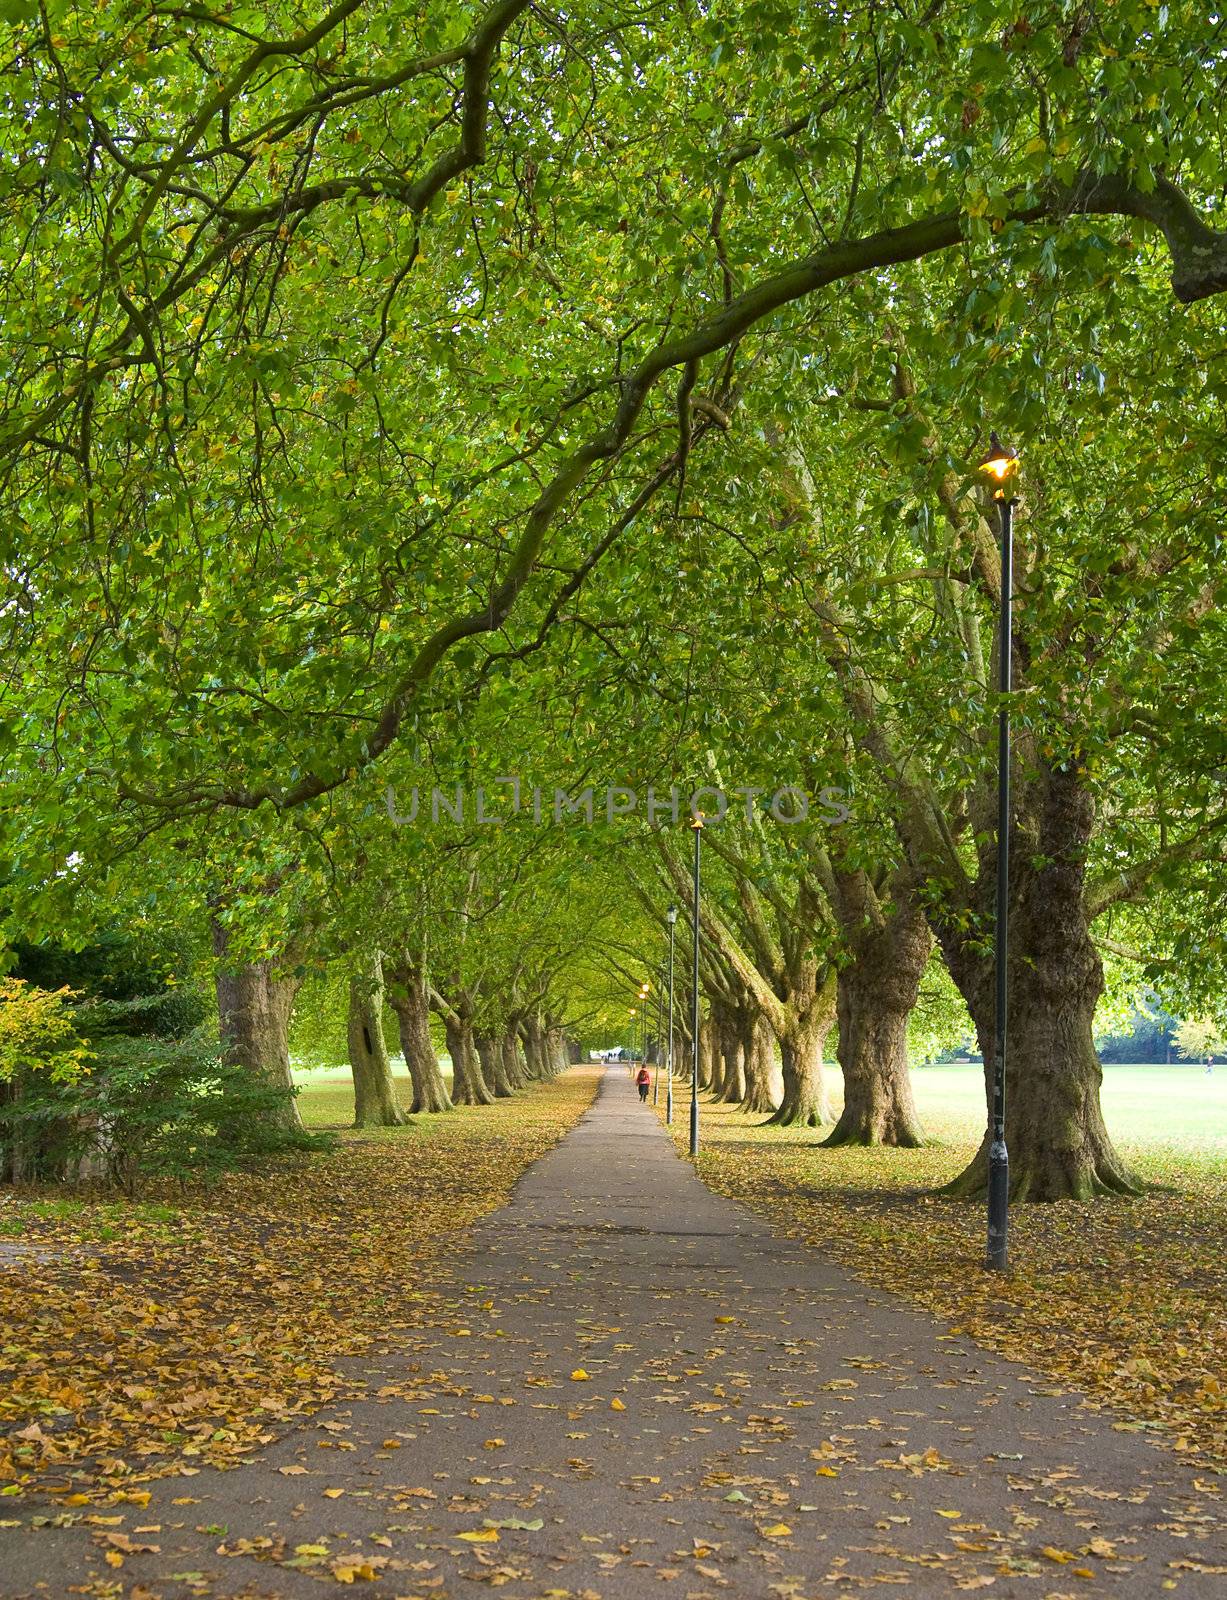 Park Scene from Cambridge, UK by enderbirer